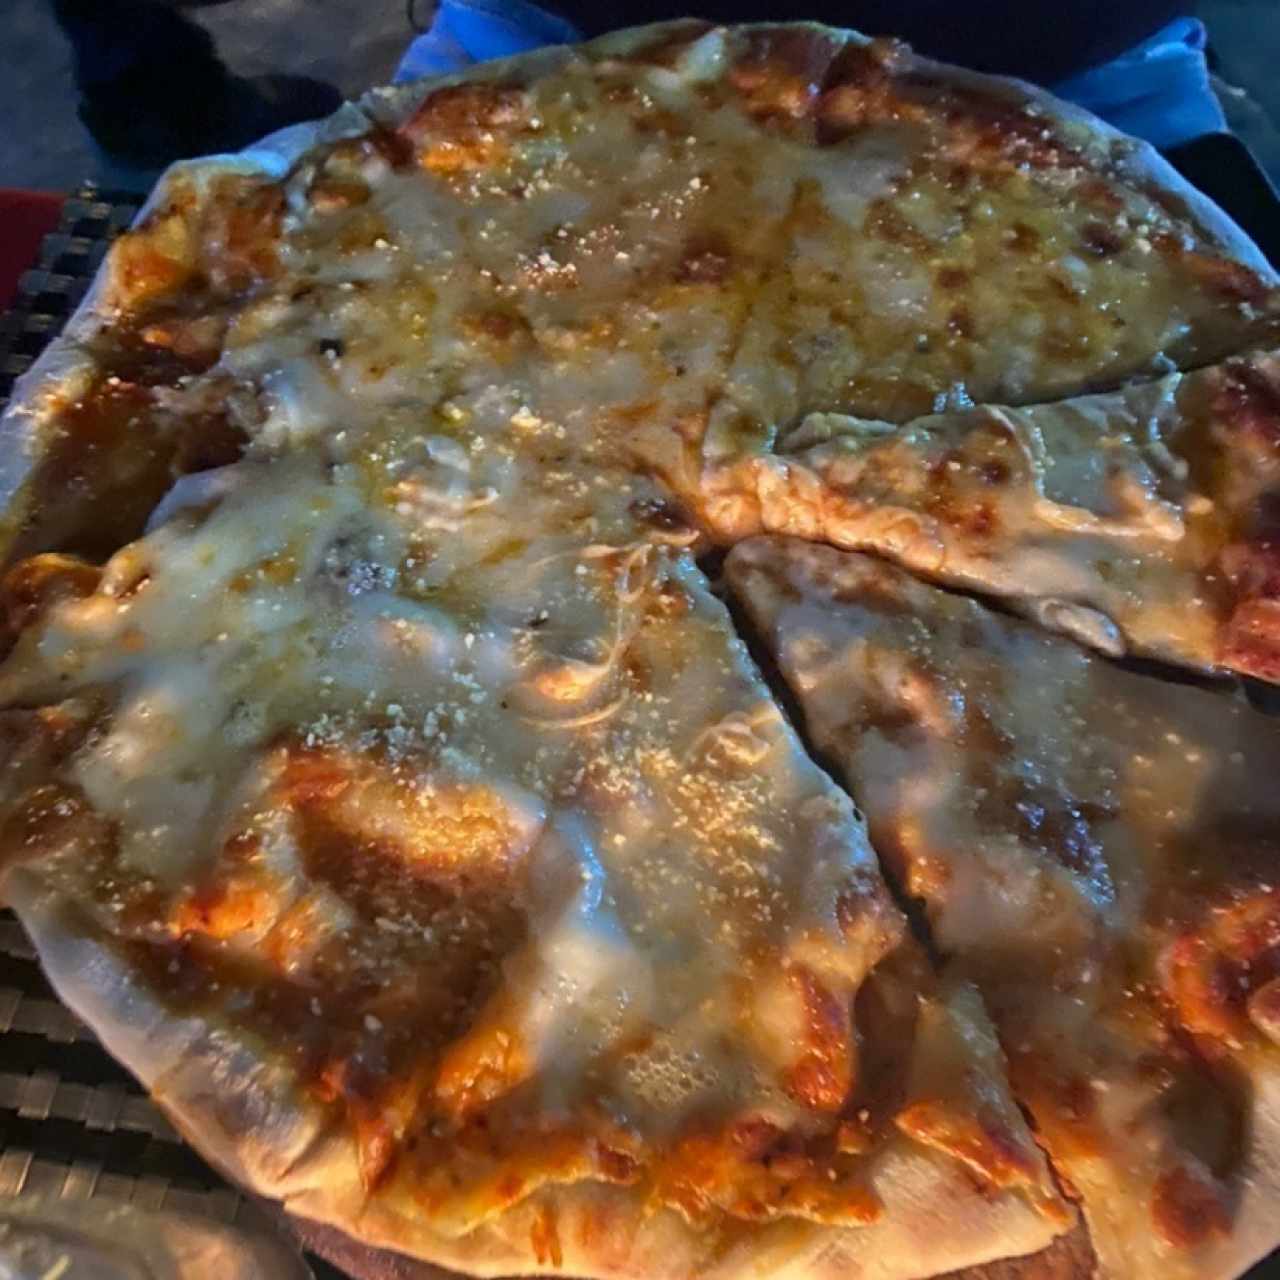 Pizzas - Cuattrro Formaggi